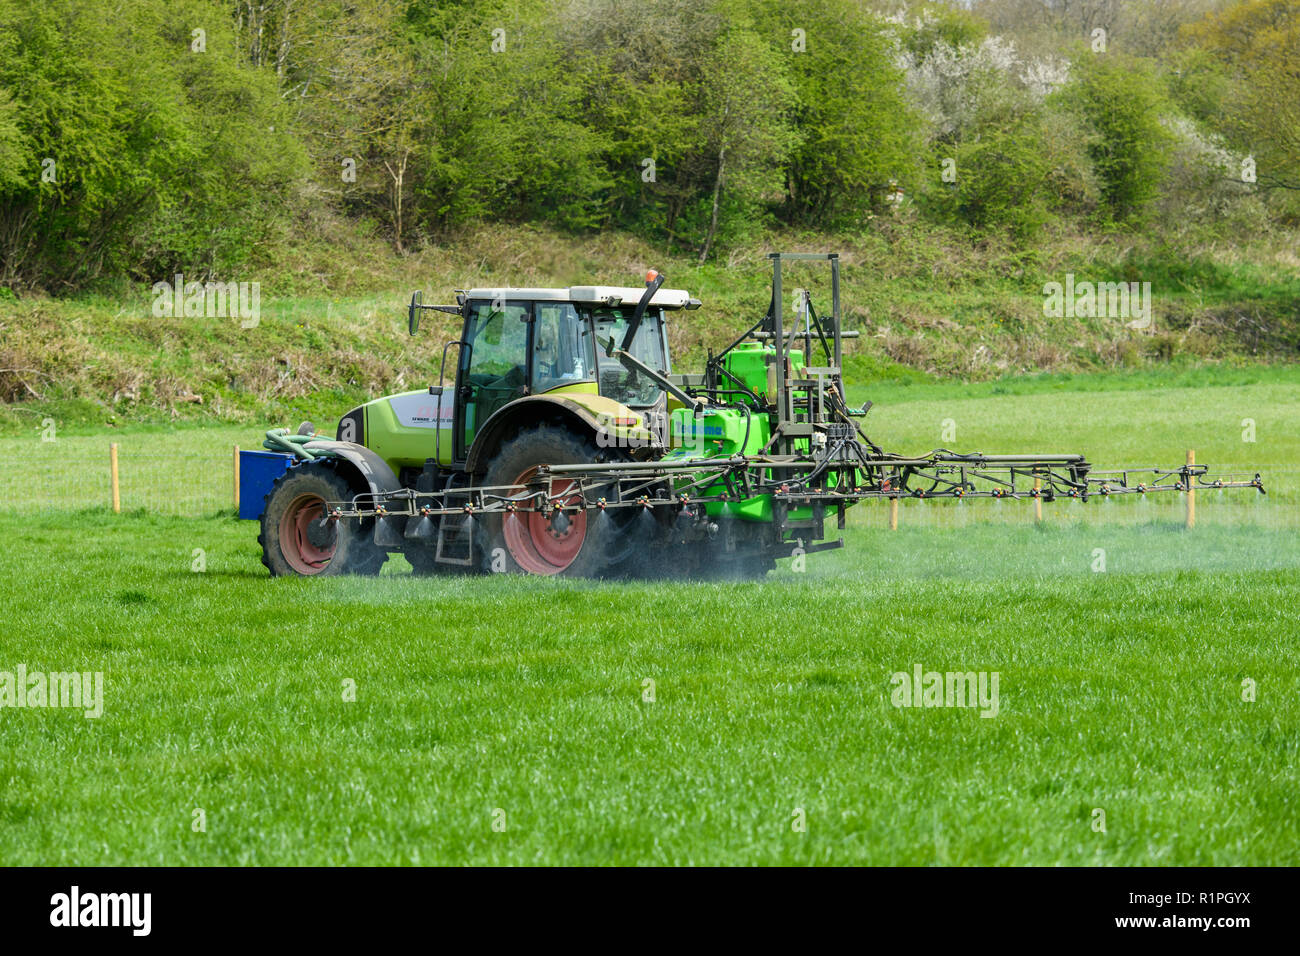 Landwirt Besetzt bei der Arbeit auf der Farm, Fahren des Traktors spritzen Erntegut auf Ackerland, mit Ausleger Sprüher Chemikalien - North Yorkshire, England, UK zu verteilen. Stockfoto